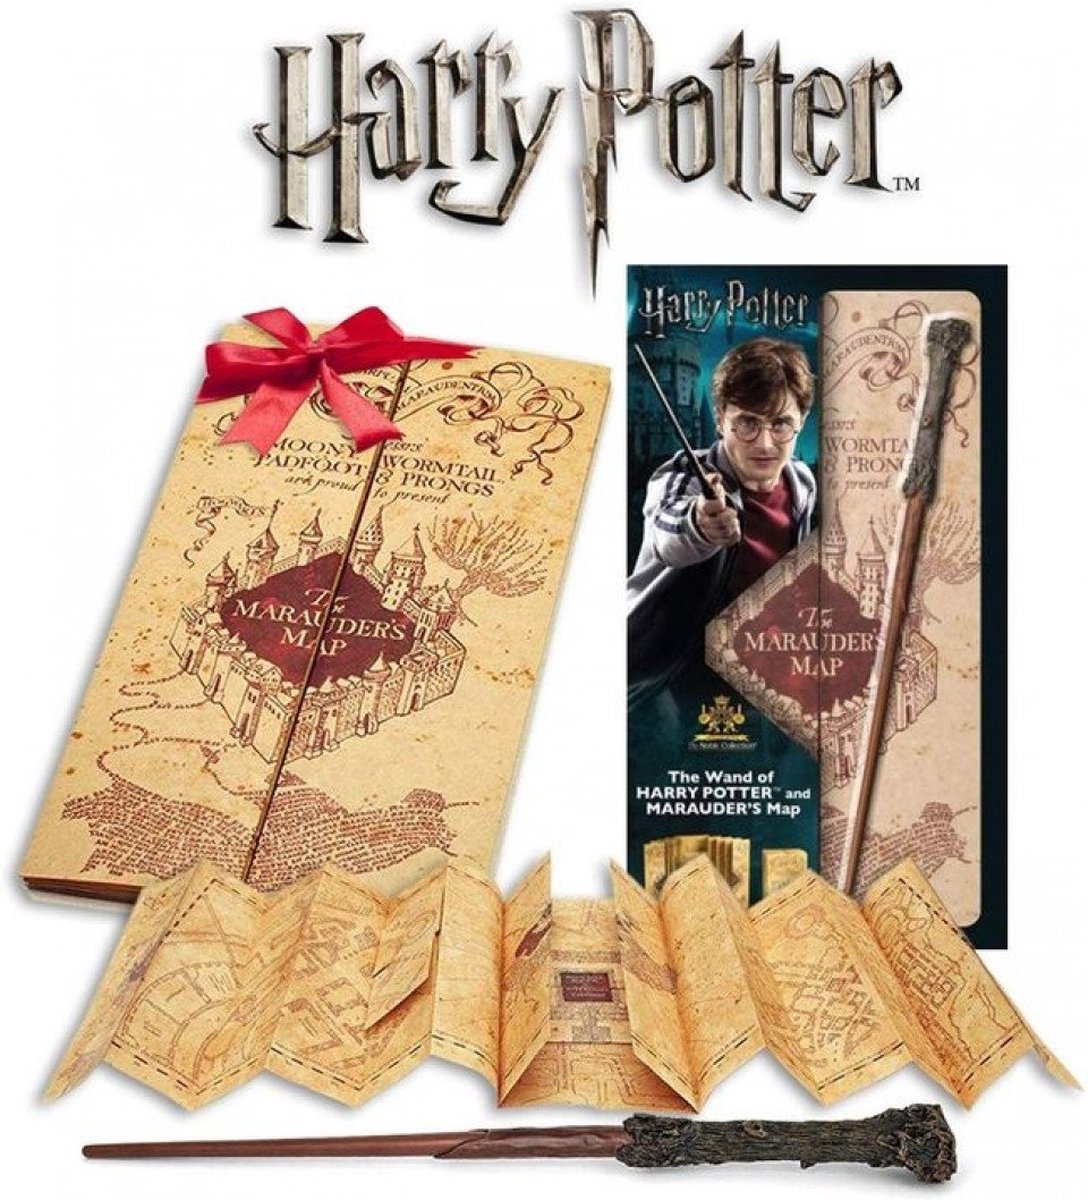 Harry Potter set baguettes magiques The Marauder's Collection